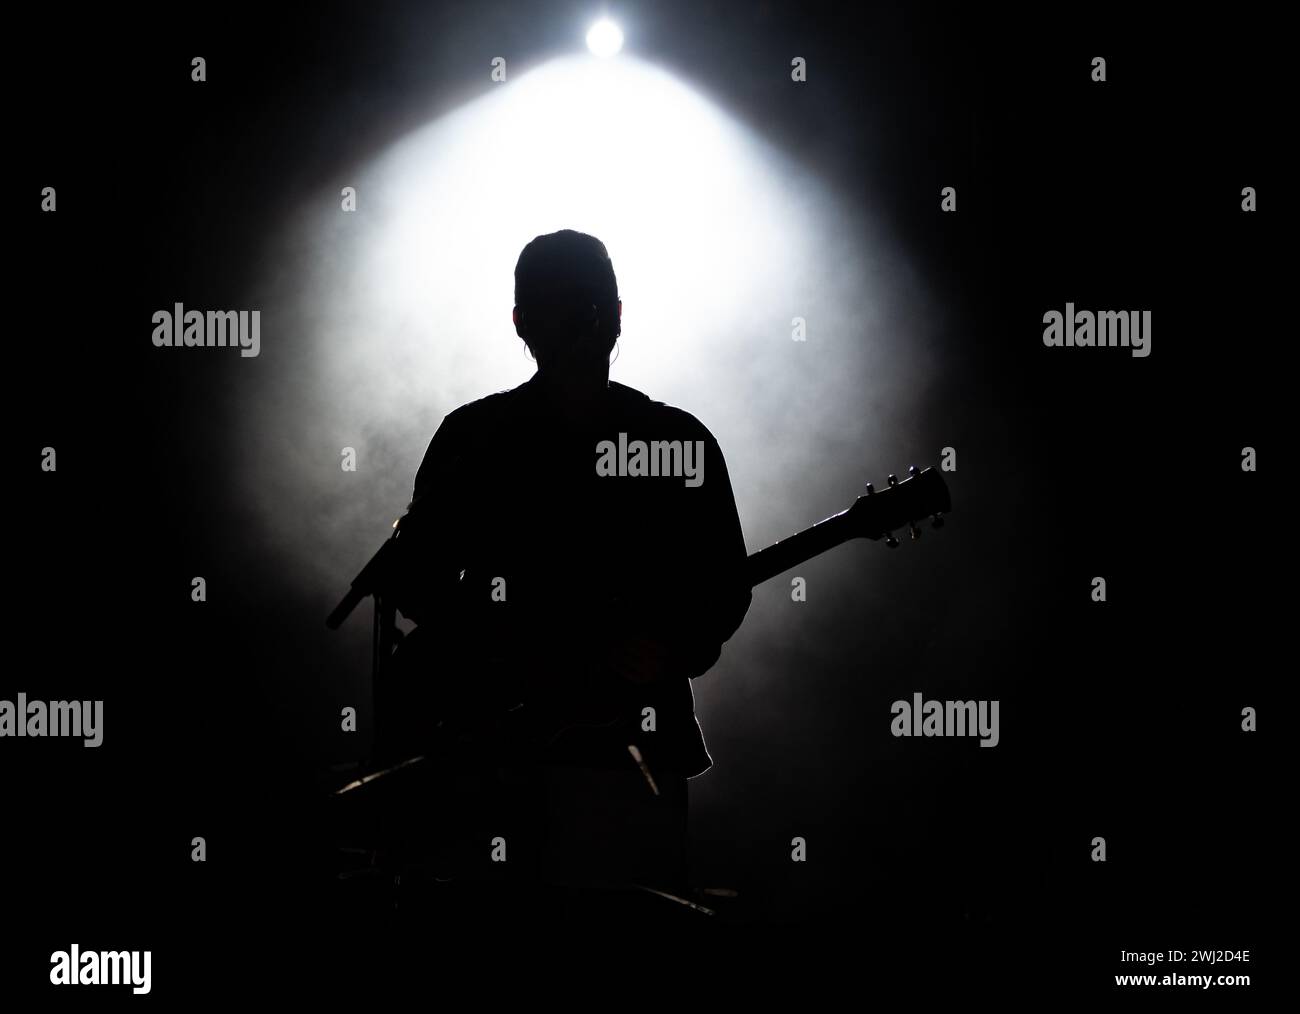 Musiker, der Gitarre spielt, spielt auf der Bühne unter Scheinwerferlicht. Silhouette eines Musikkünstlers und einer Band auf der Bühne Stockfoto